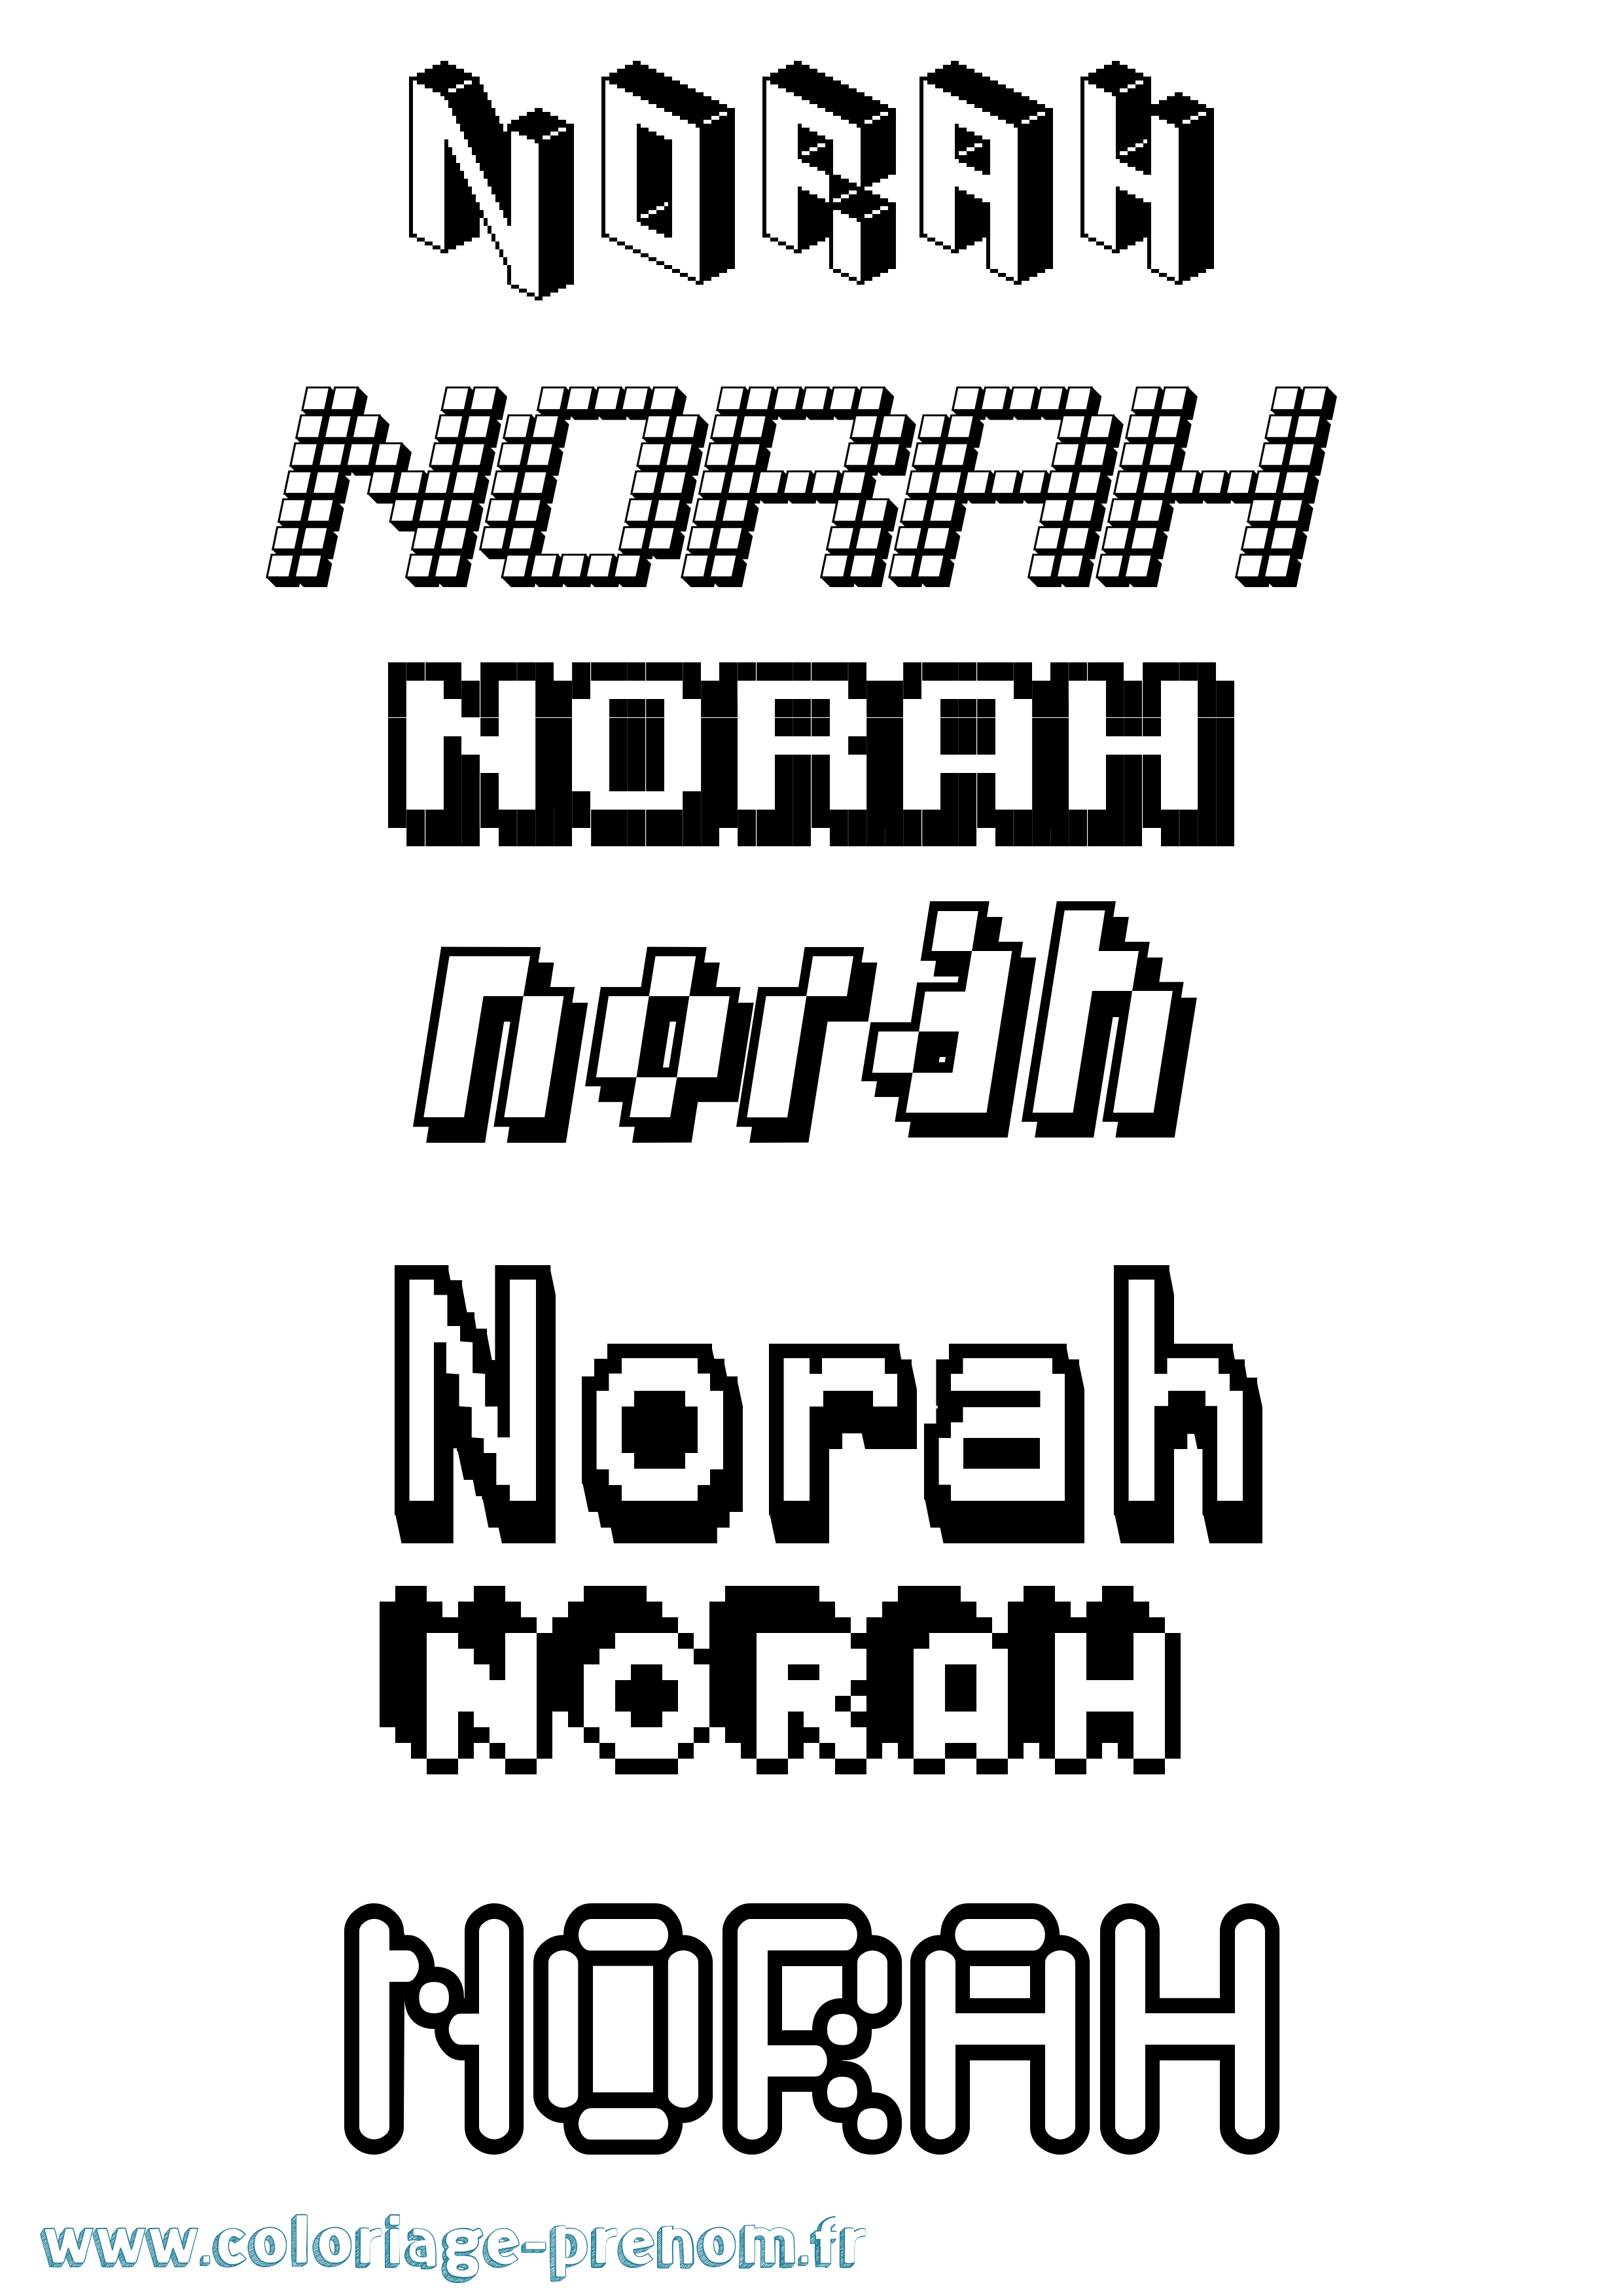 Coloriage prénom Norah Pixel